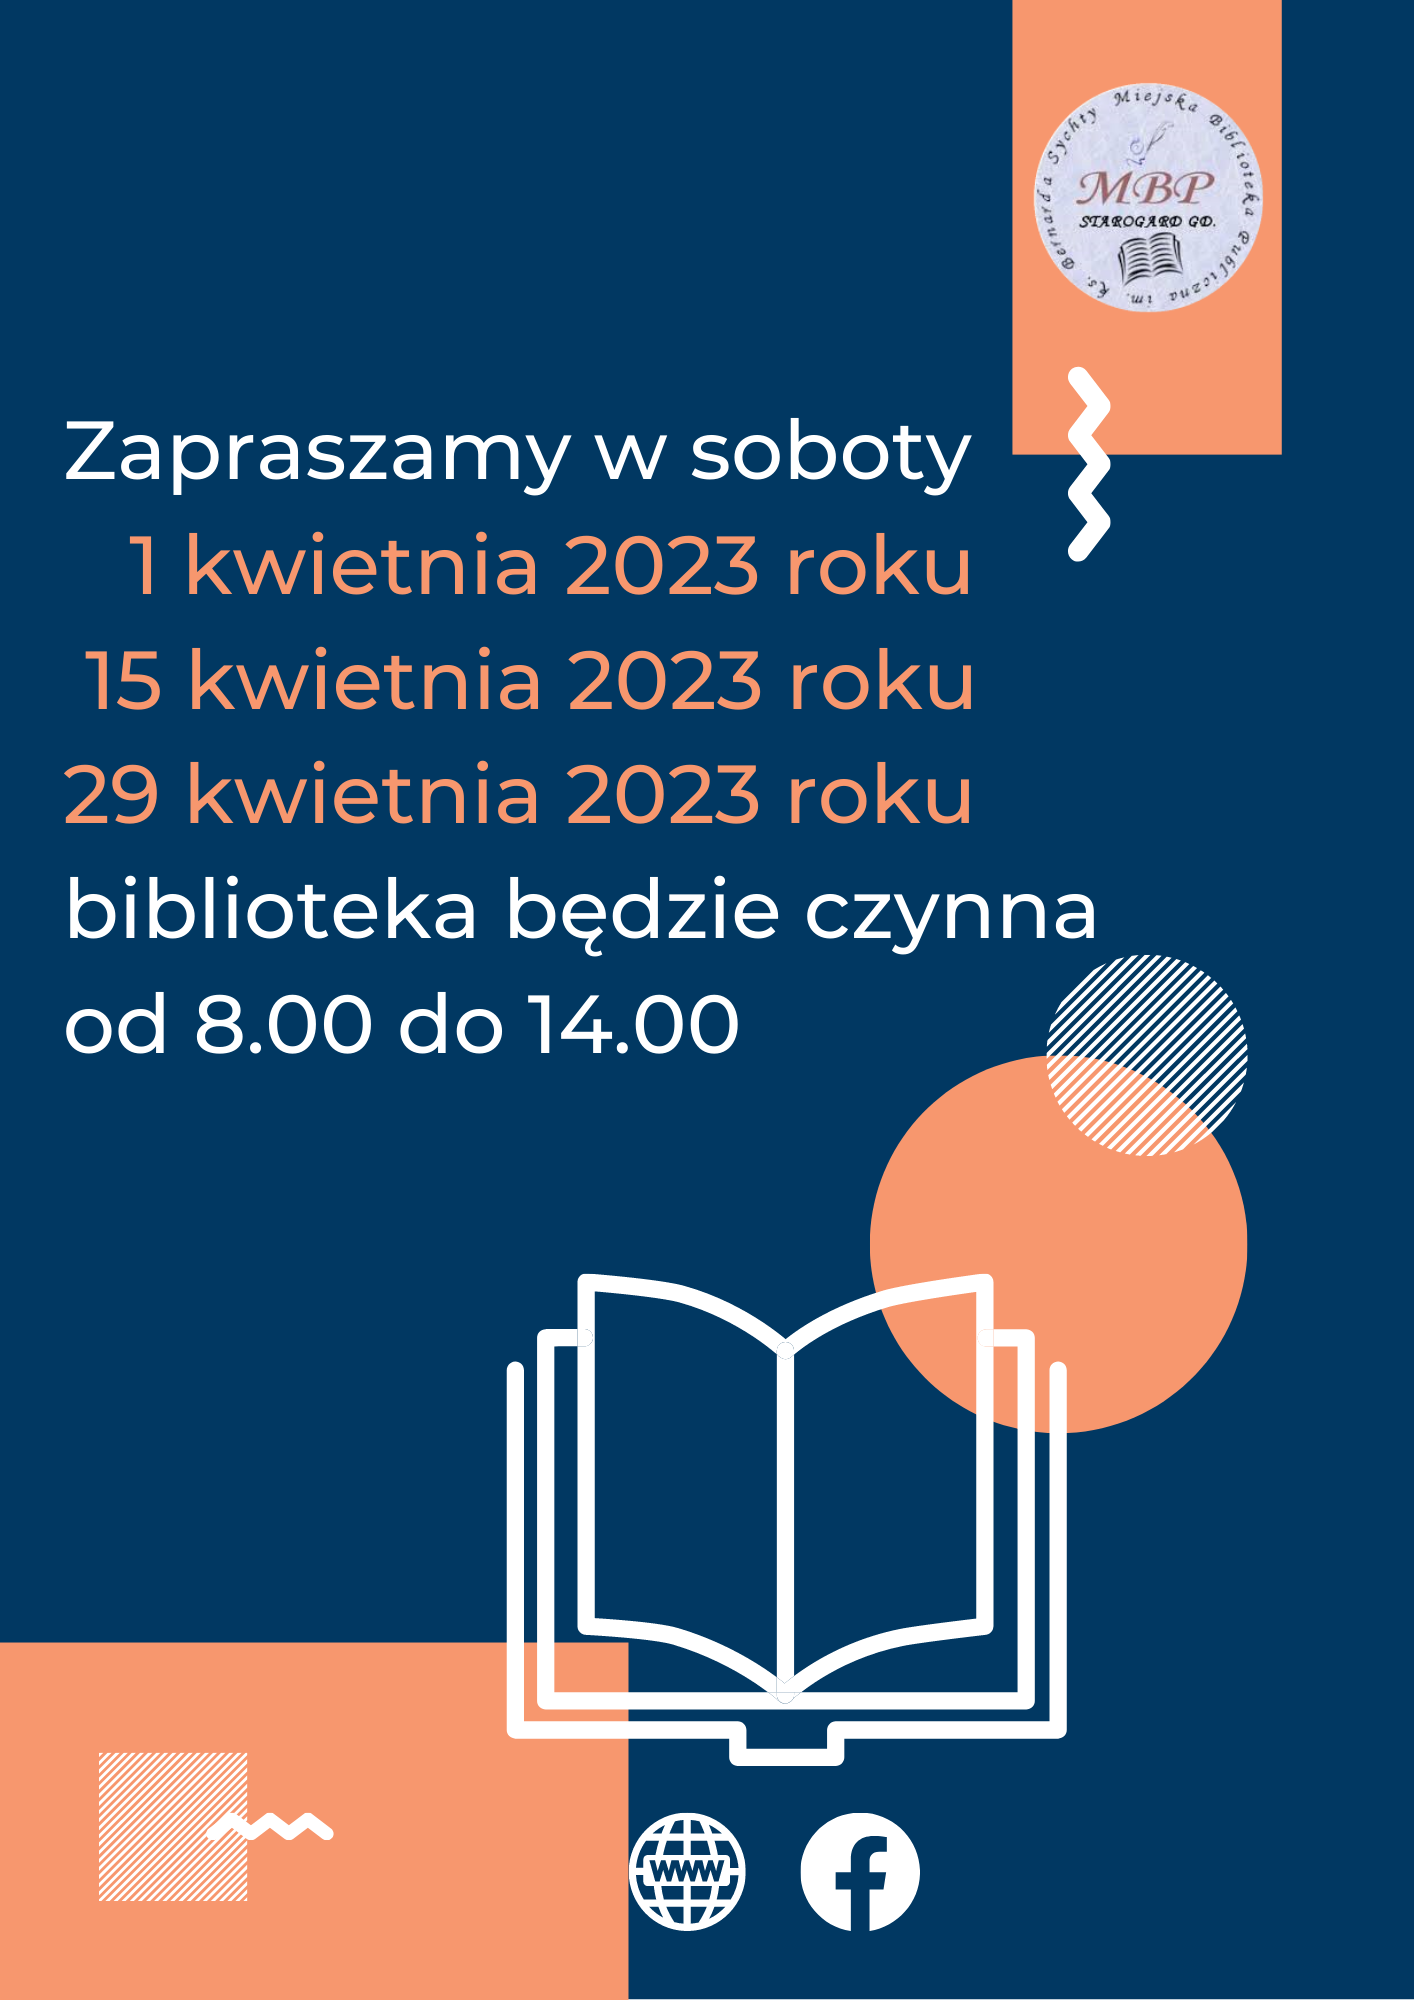 Plakat informujący o pracujących sobotach: 1 kwietnia 2023 roku, 15 kwietnia 2023 roku i 29 kwietnia 2023 roku, biblioteka będzie czynna od 8.00 do 14.00. Miejska Biblioteka Publiczna w Starogardzie Gdańskim.